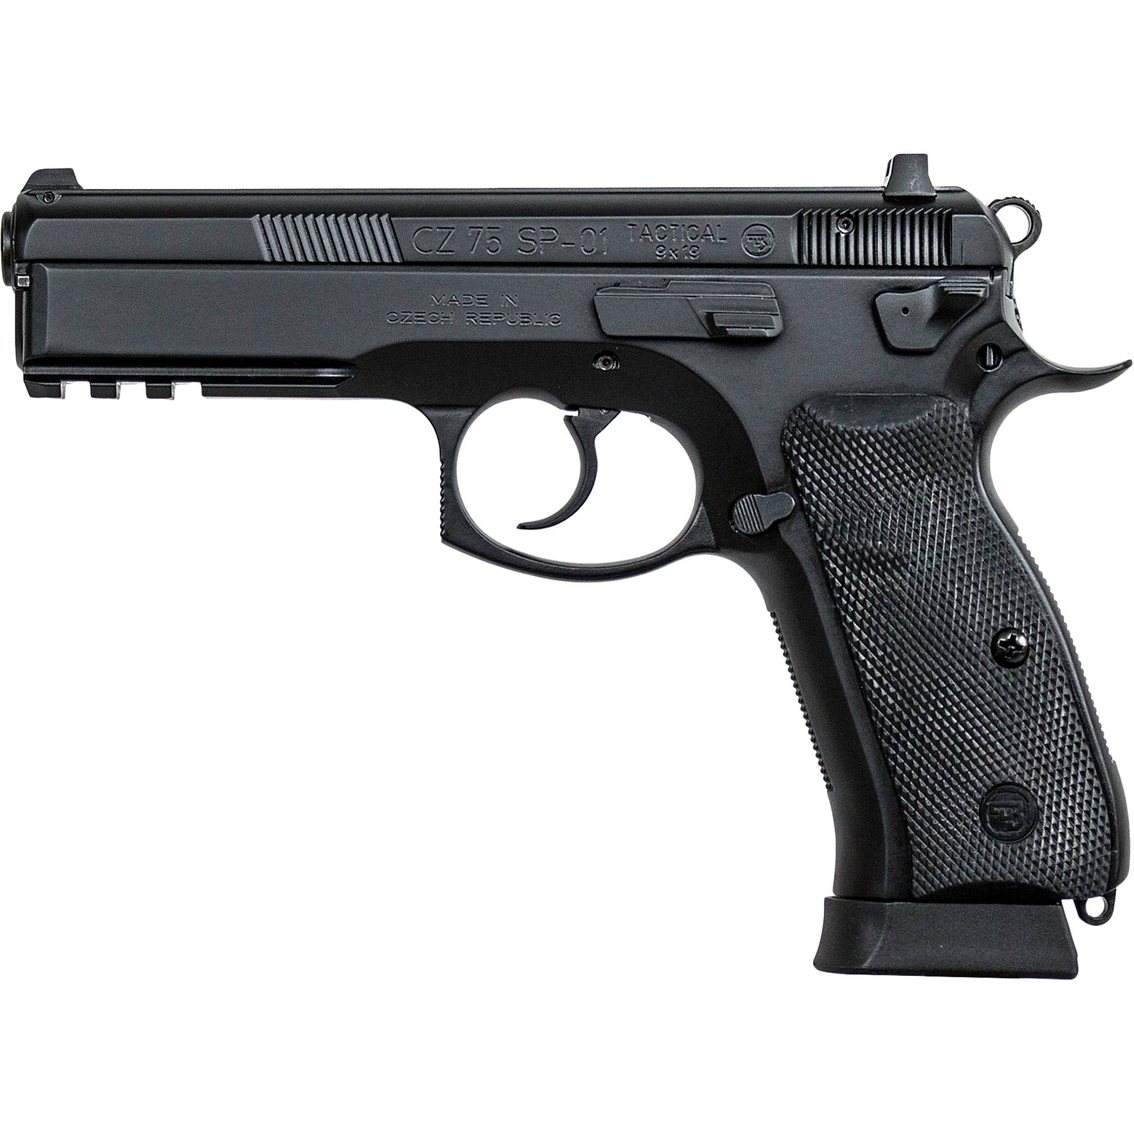 CZ 75 SP-01 Tactical 9mm 4.6 in. Barrel 18 Rnd 2 Mag Pistol Black with Decocker - Image 2 of 2